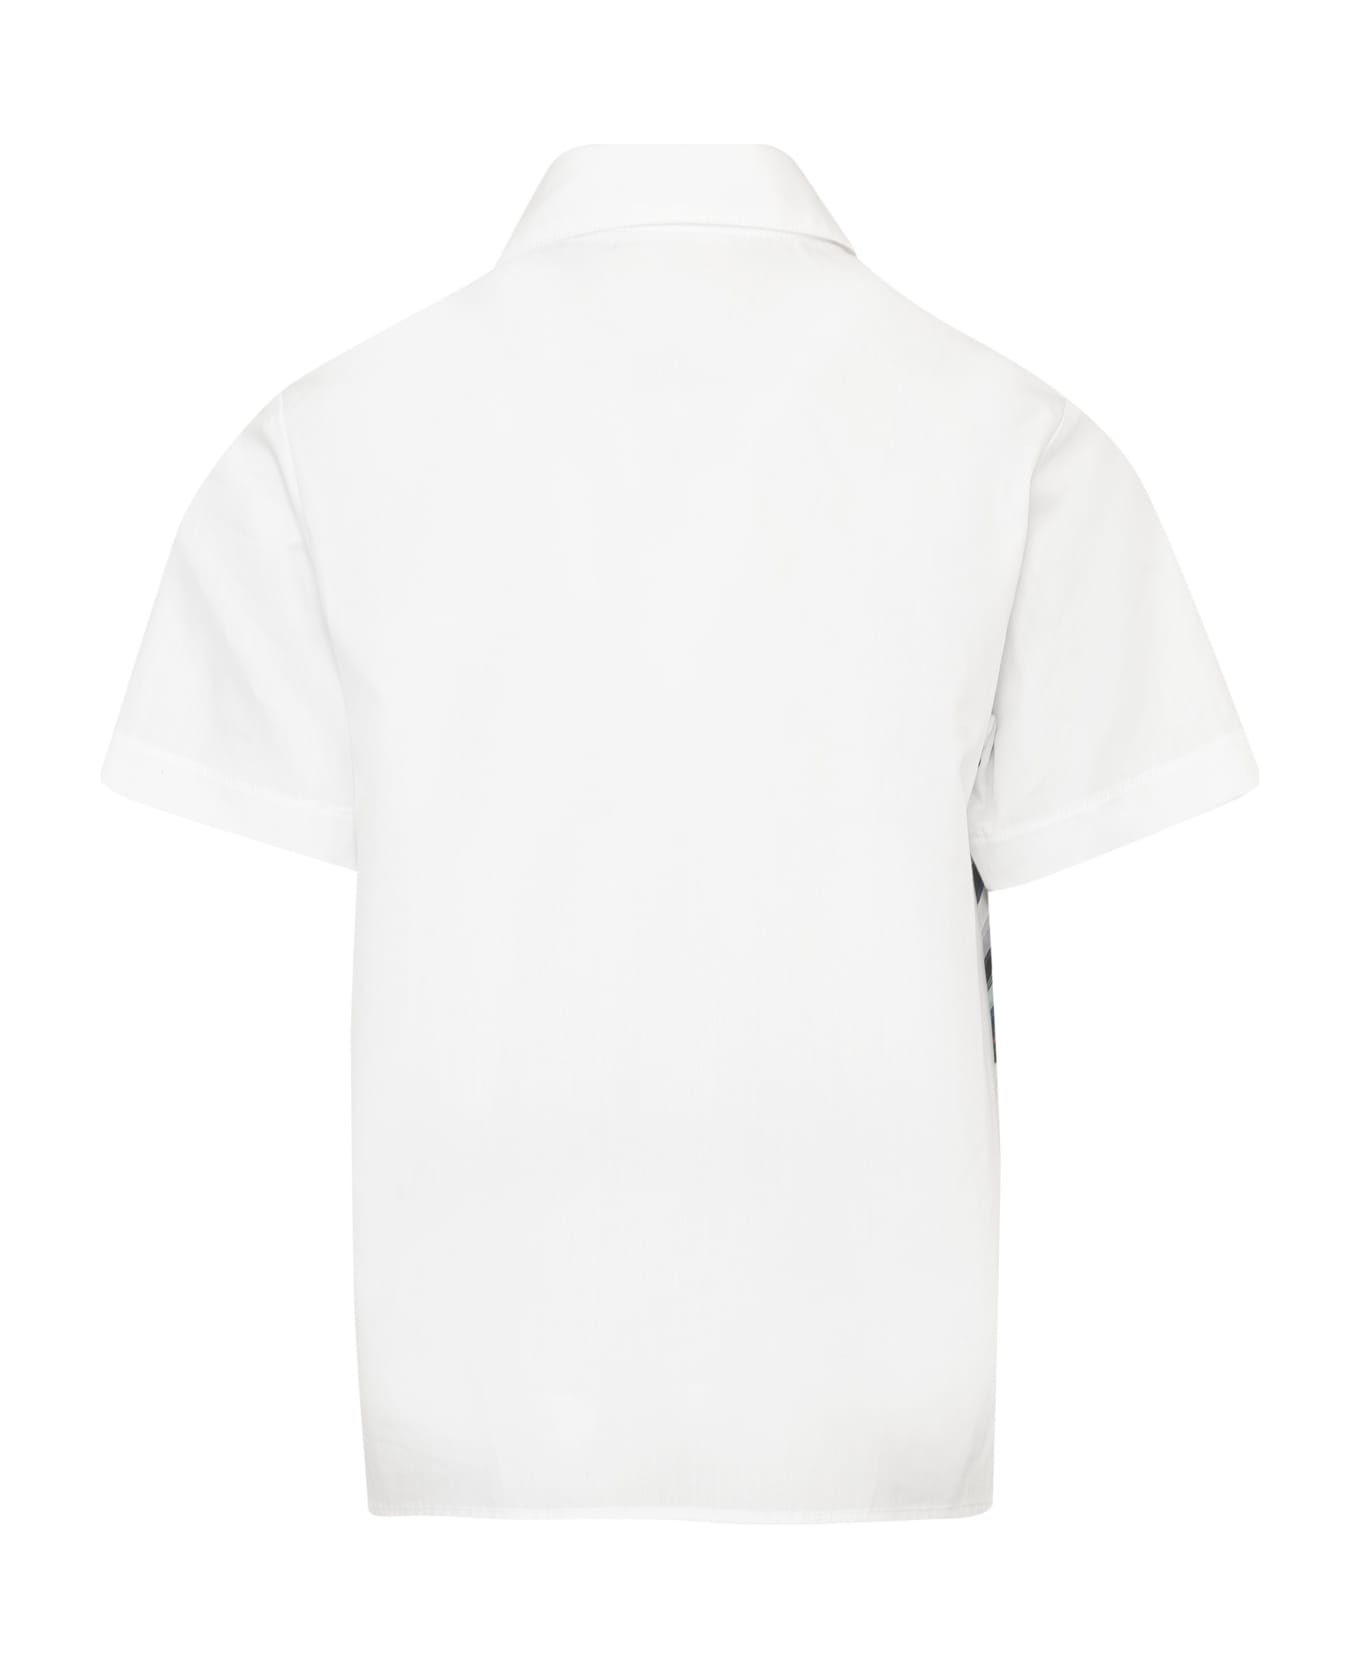 Missoni Kids Camicia Con Stampa - White シャツ